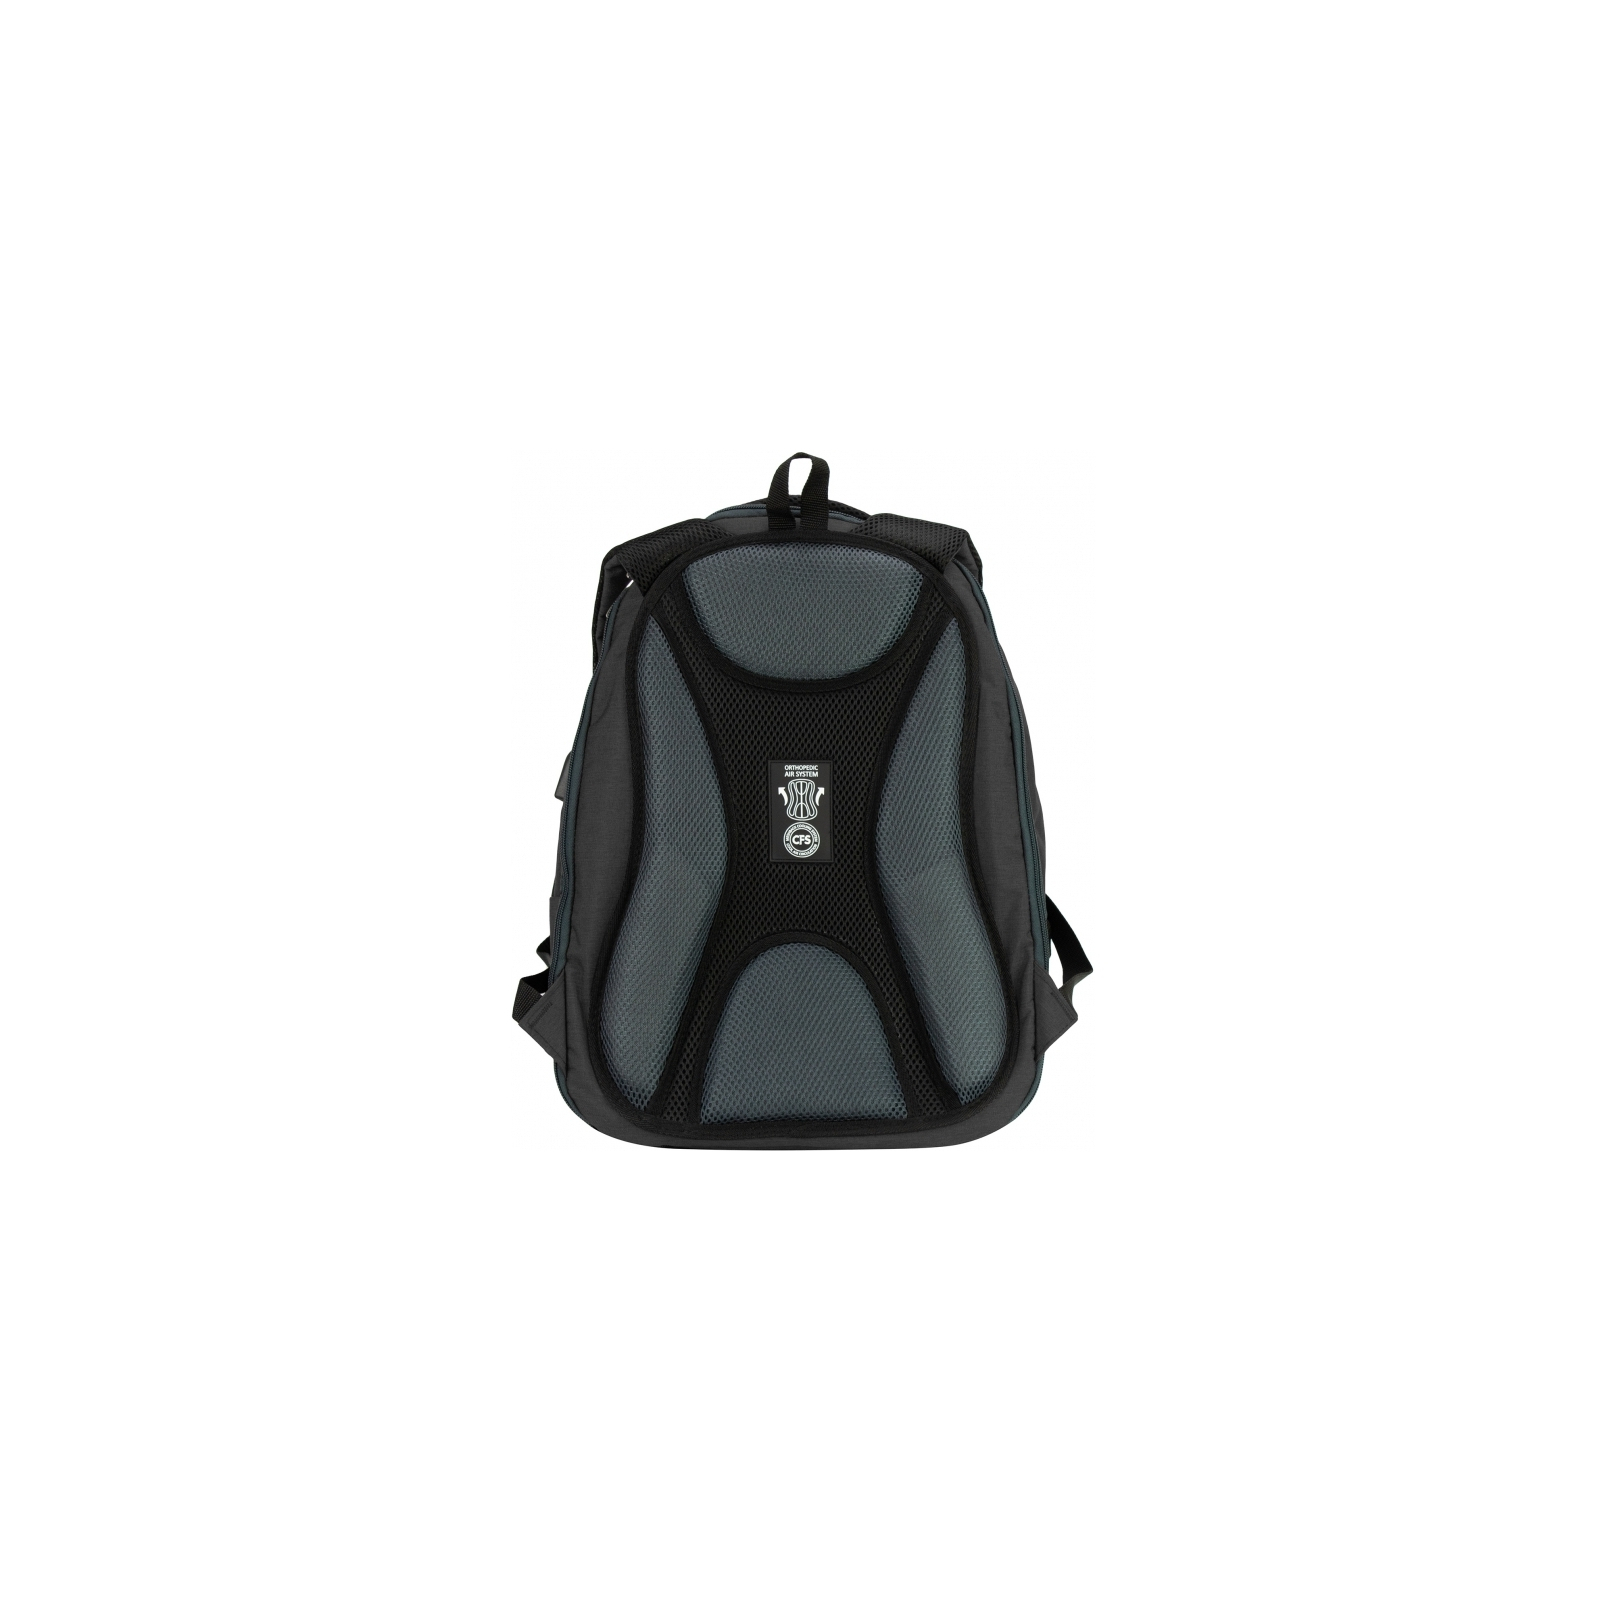 Рюкзак шкільний Cool For School 44x32x20 см 28 л Рожевий (CF86588-12) зображення 3